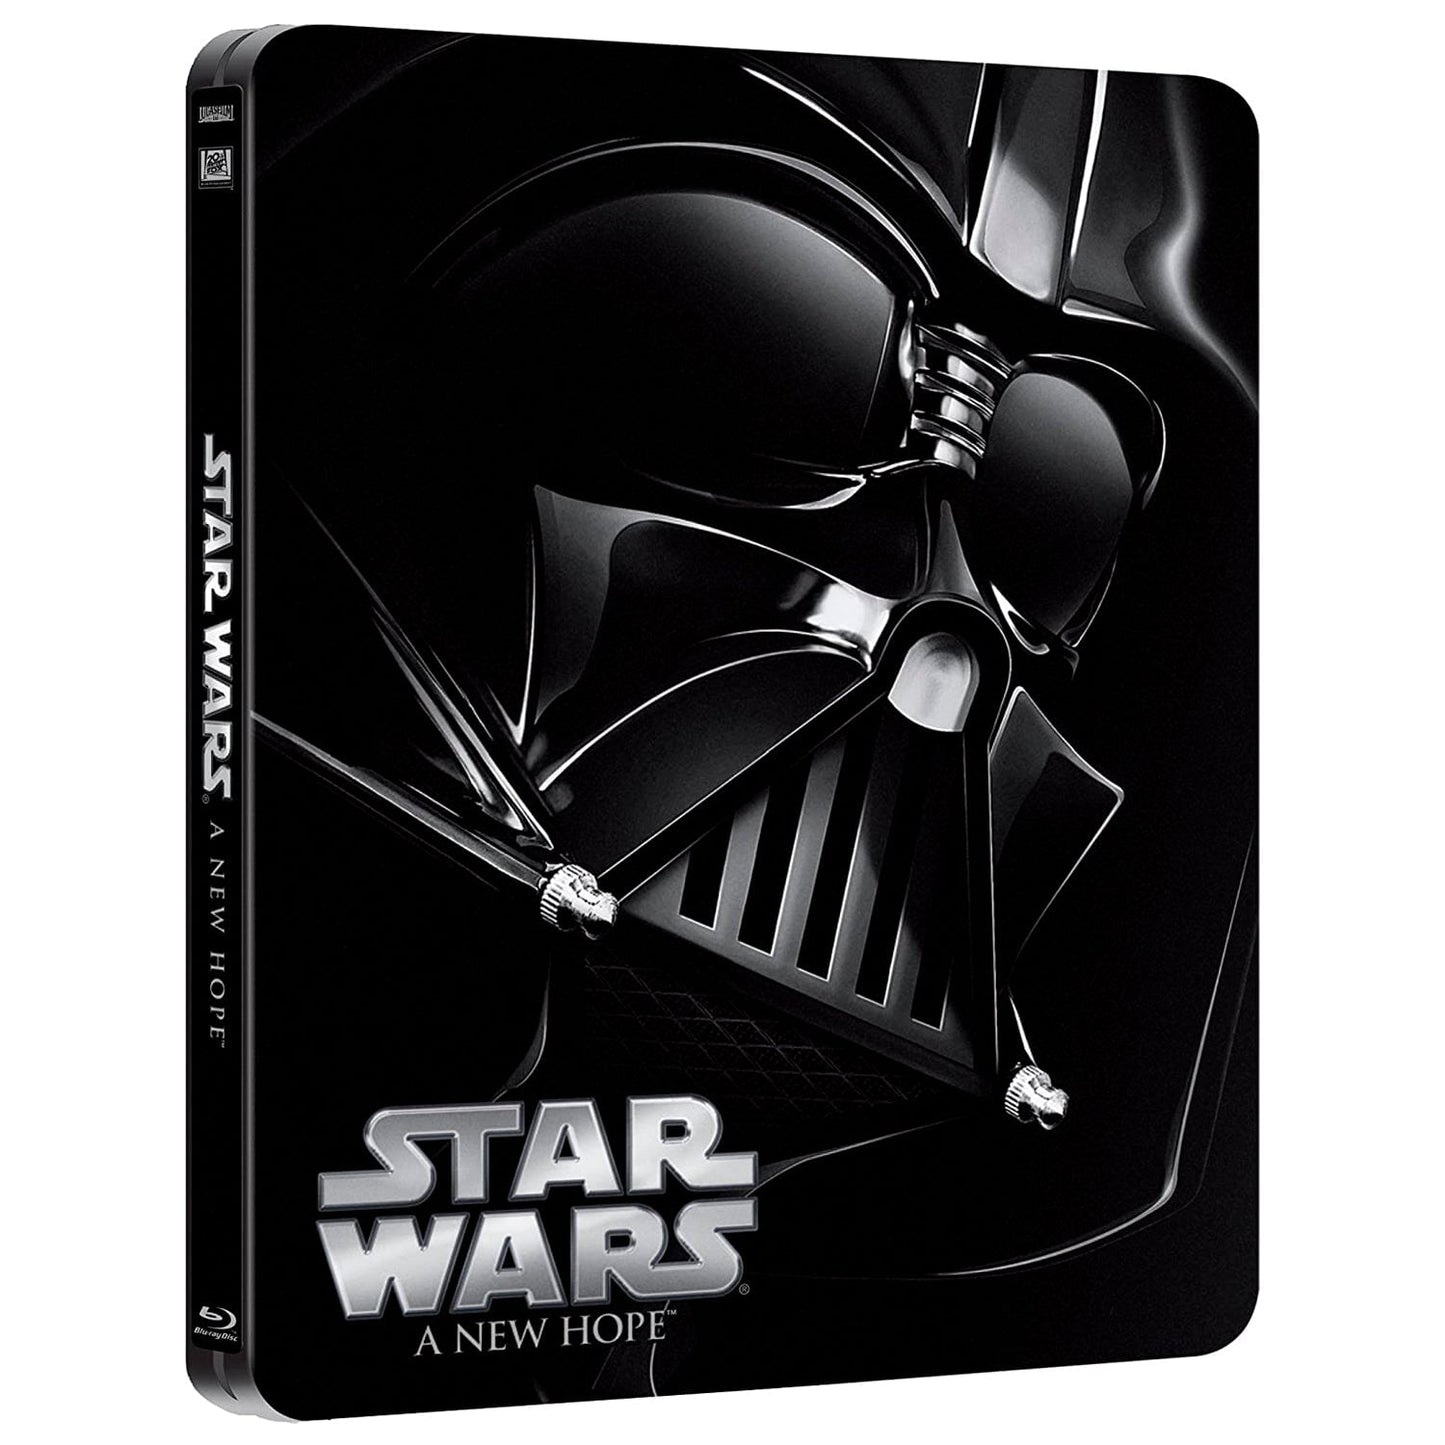 Звёздные войны: Эпизод IV – Новая надежда (Blu-ray) Steelbook